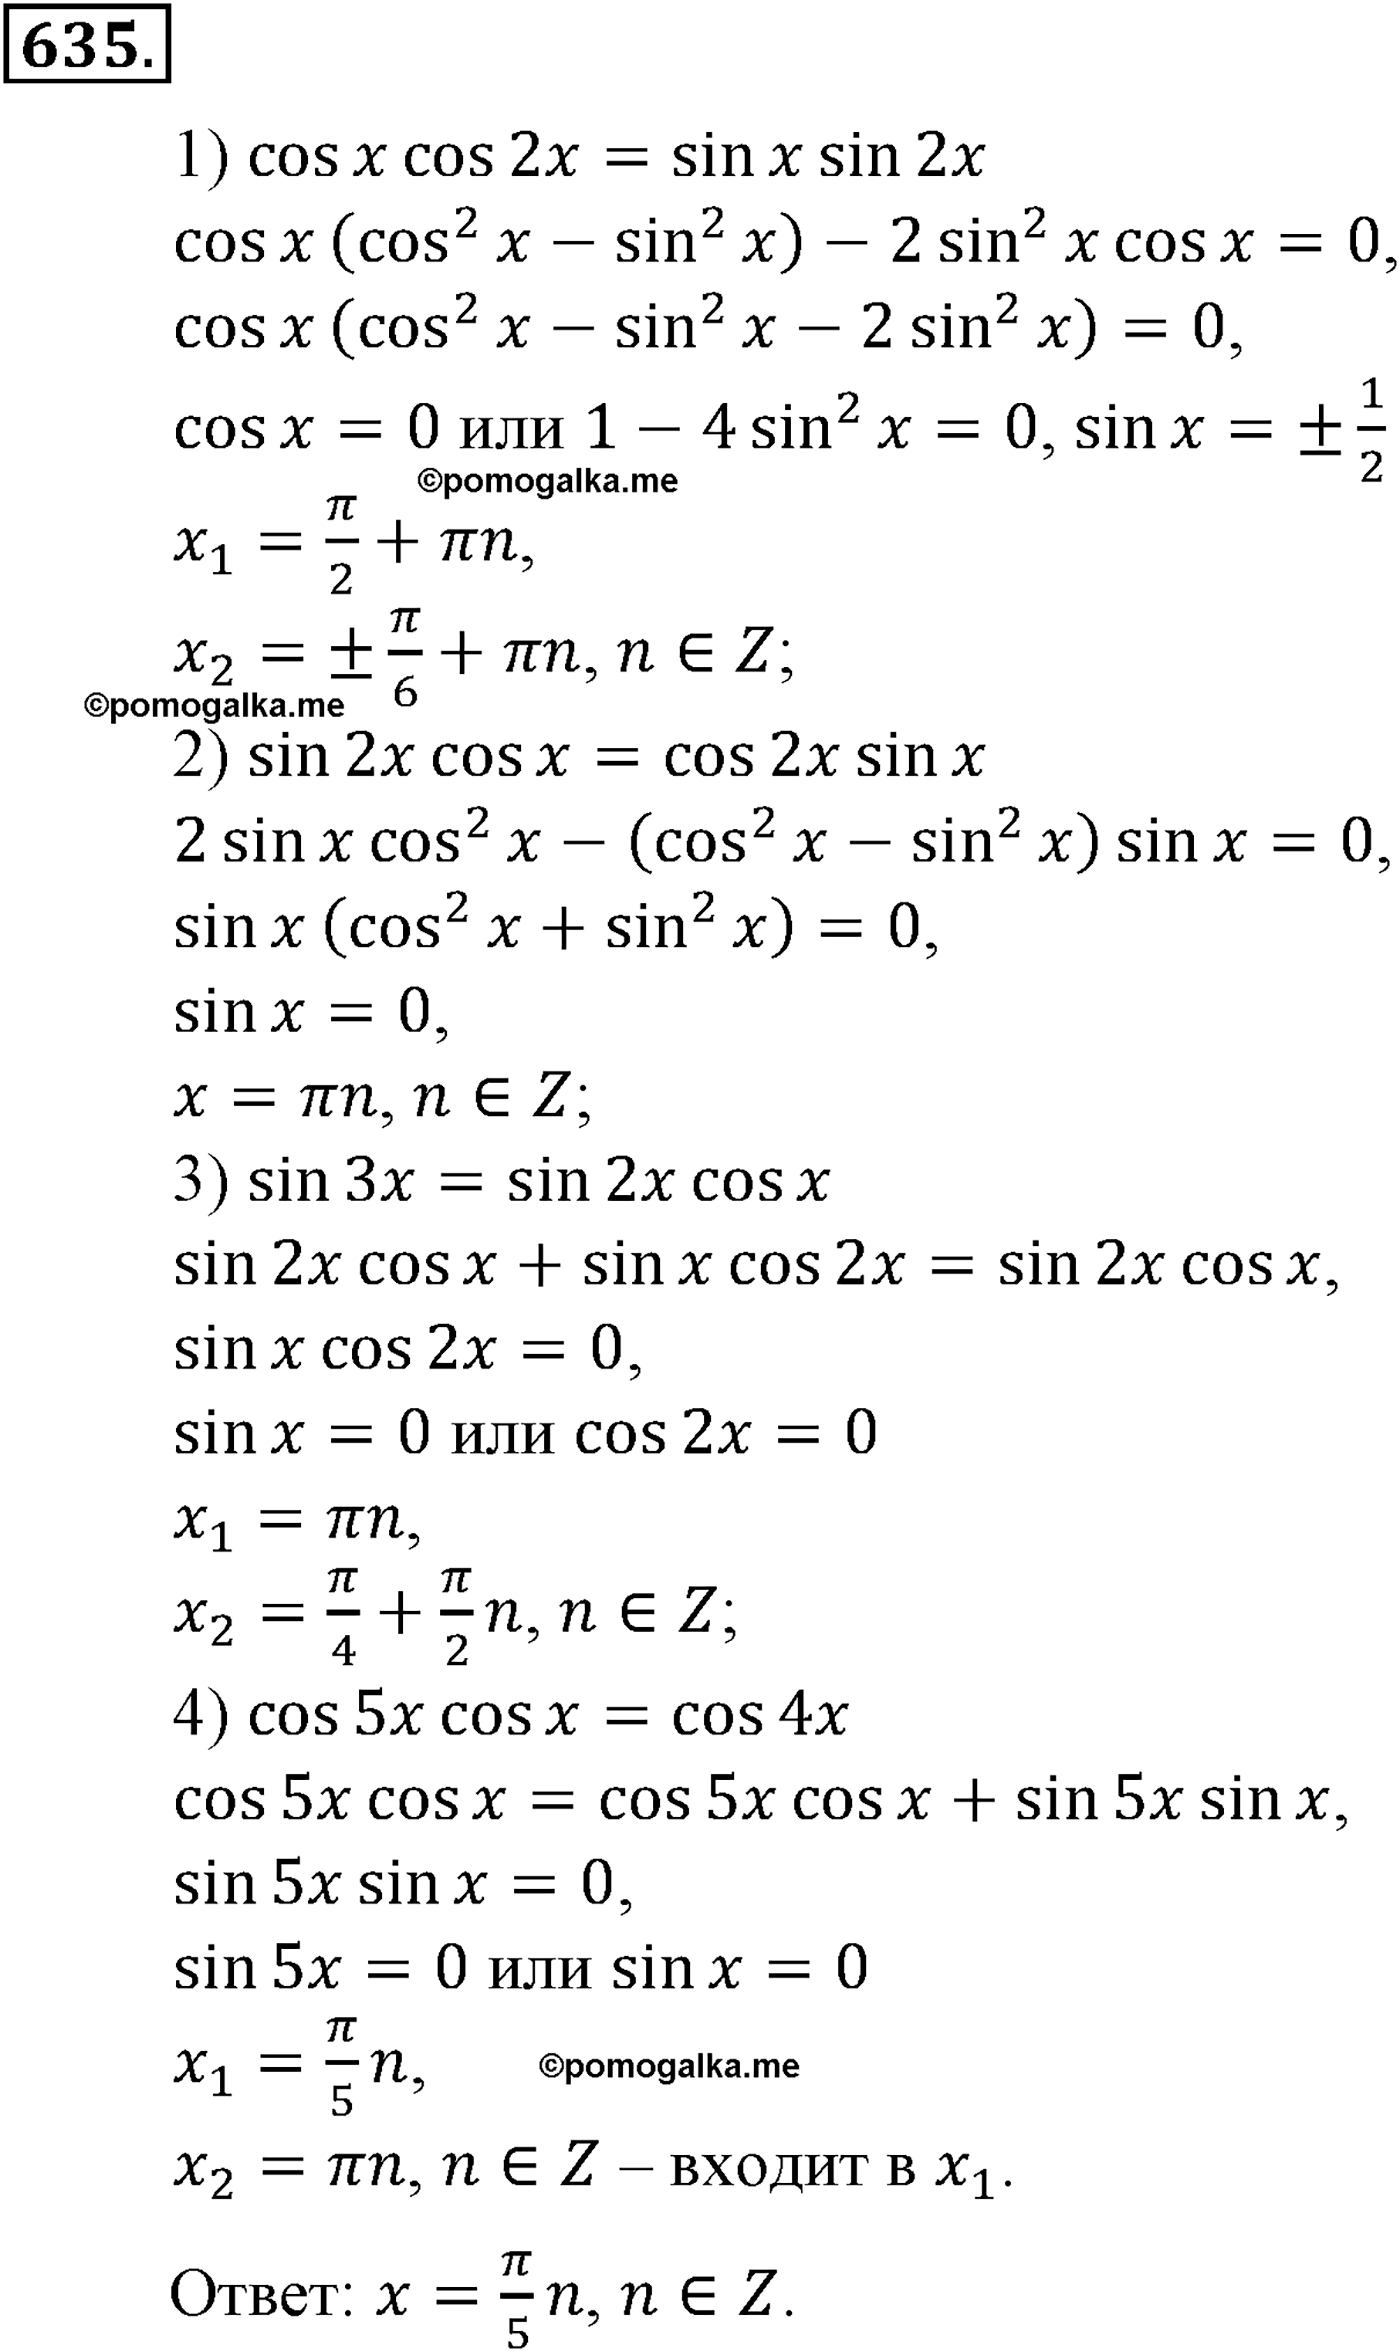 разбор задачи №635 по алгебре за 10-11 класс из учебника Алимова, Колягина